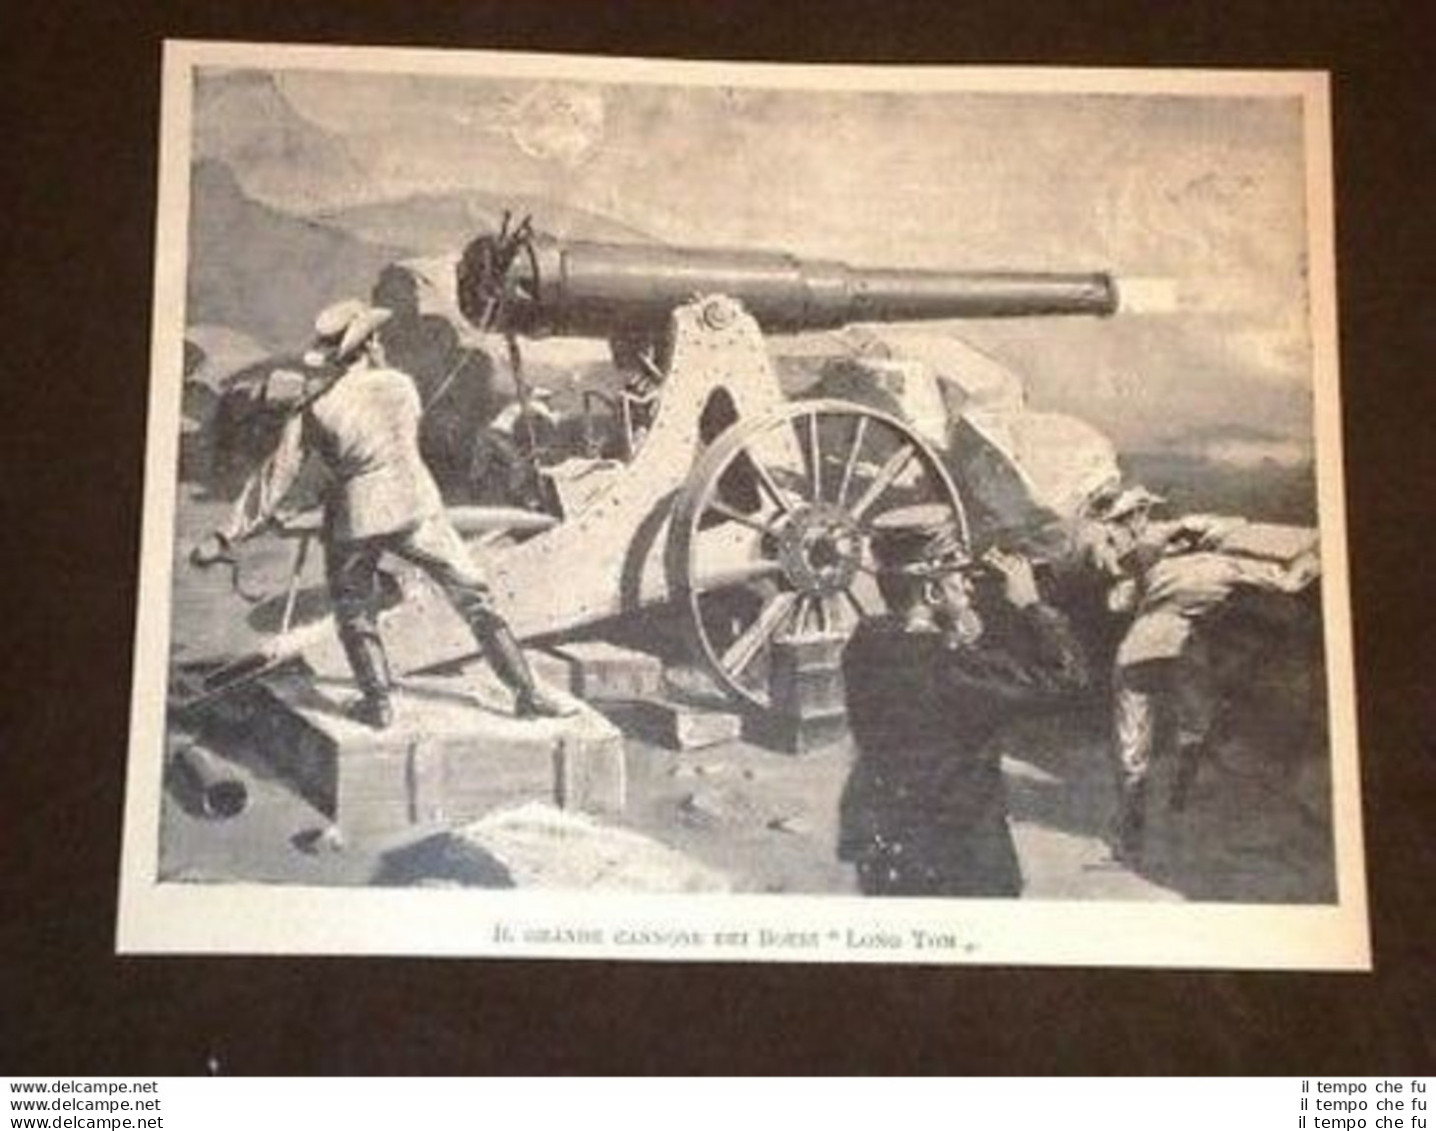 Guerra Il Grande Cannone Dei Boeri "Long Tom" - Before 1900